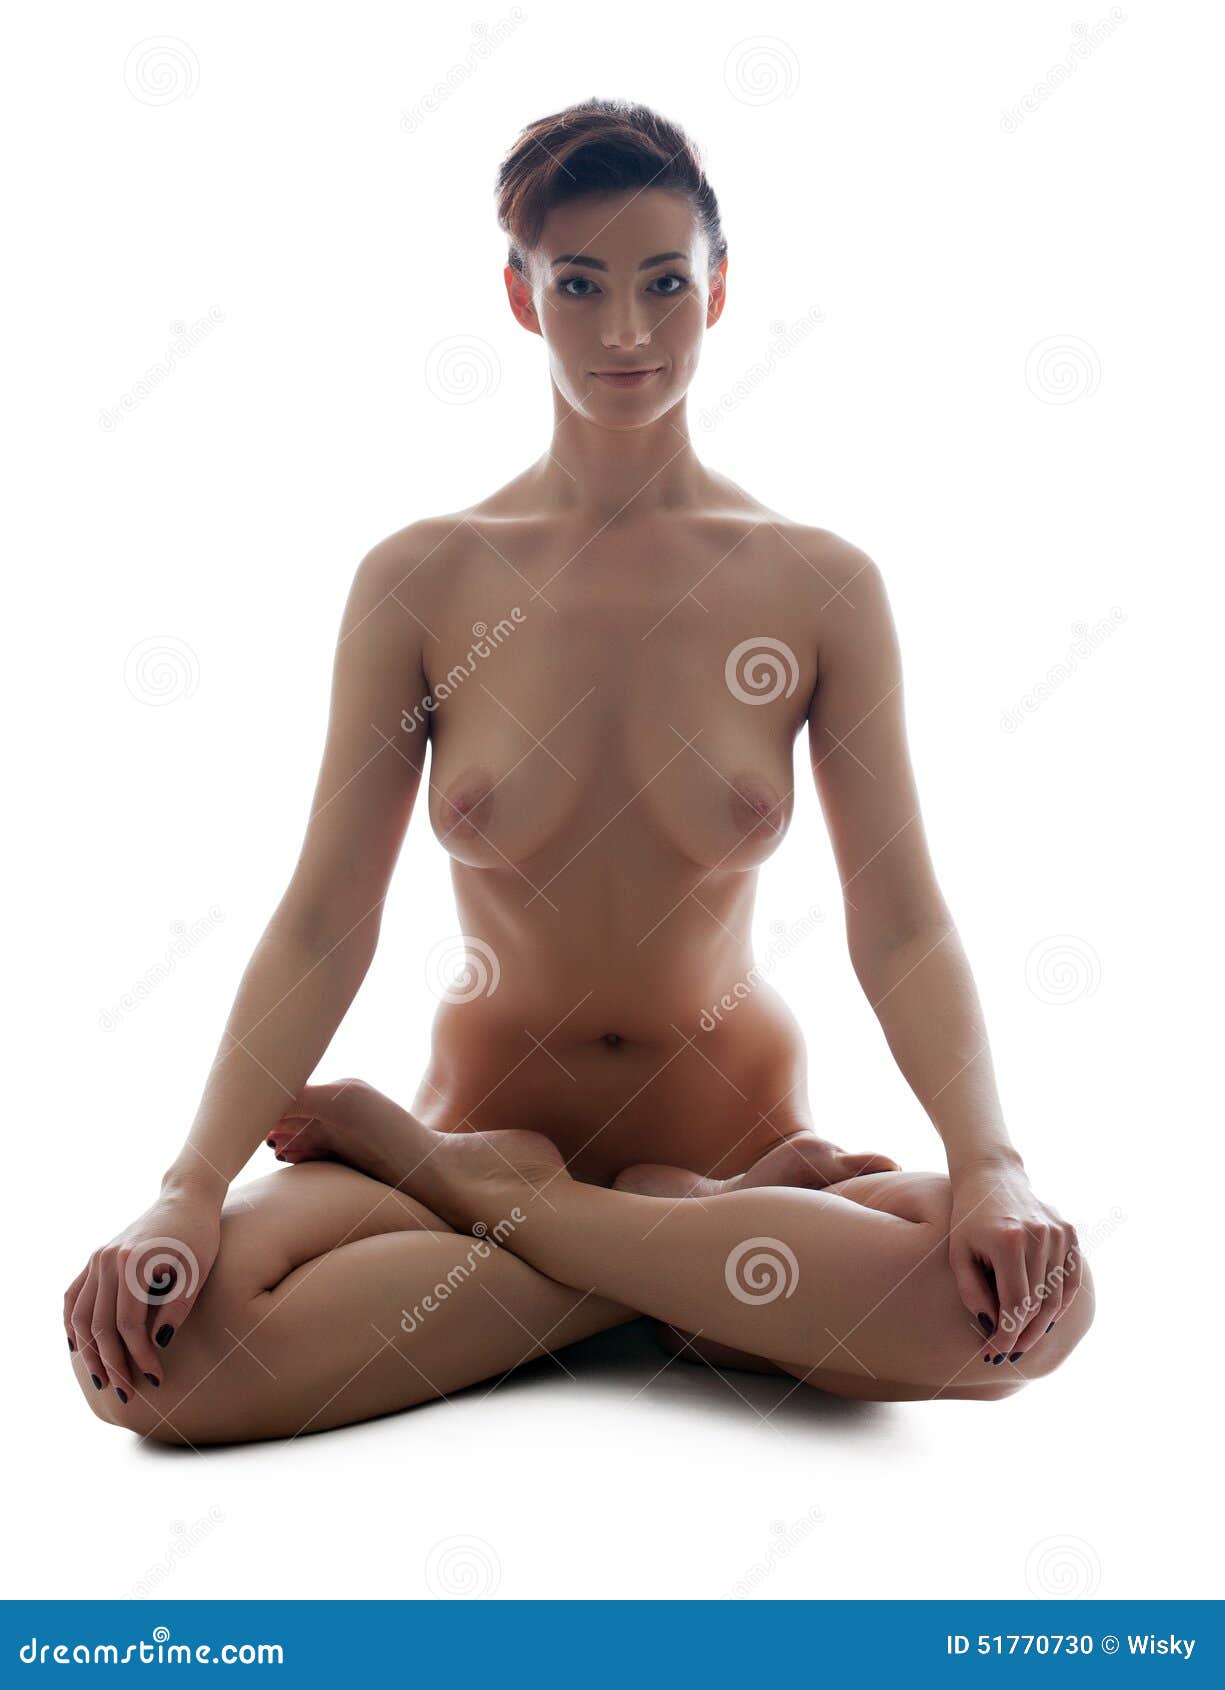 Yoga female nude